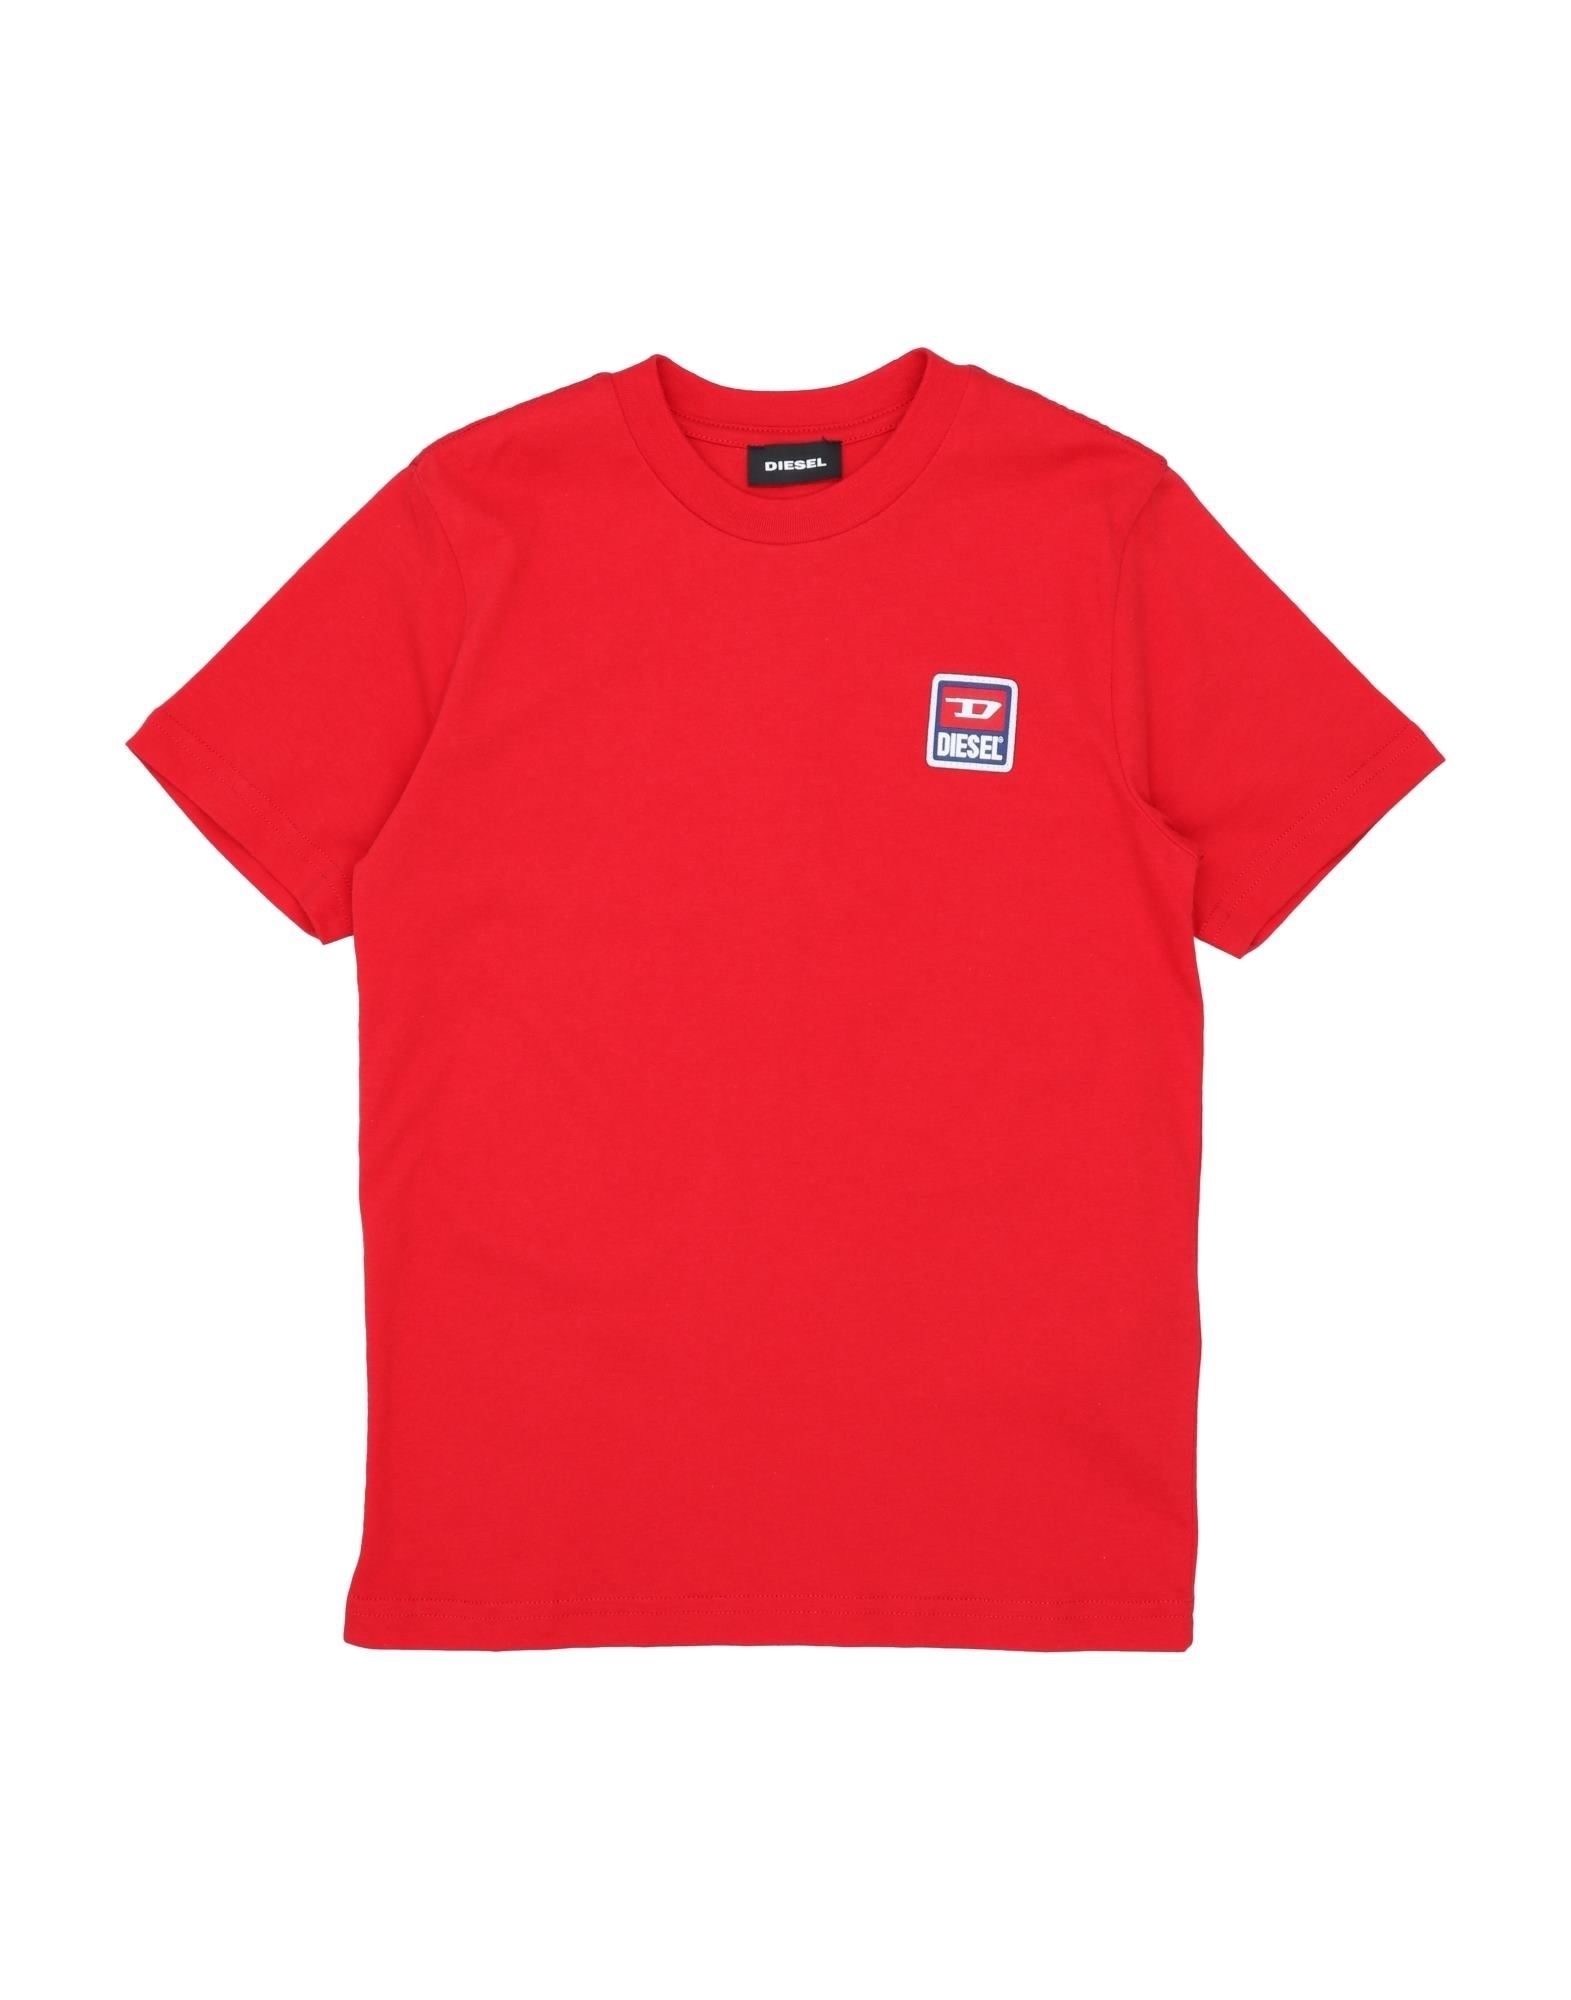 Shop Diesel Toddler Boy T-shirt Red Size 6 Cotton